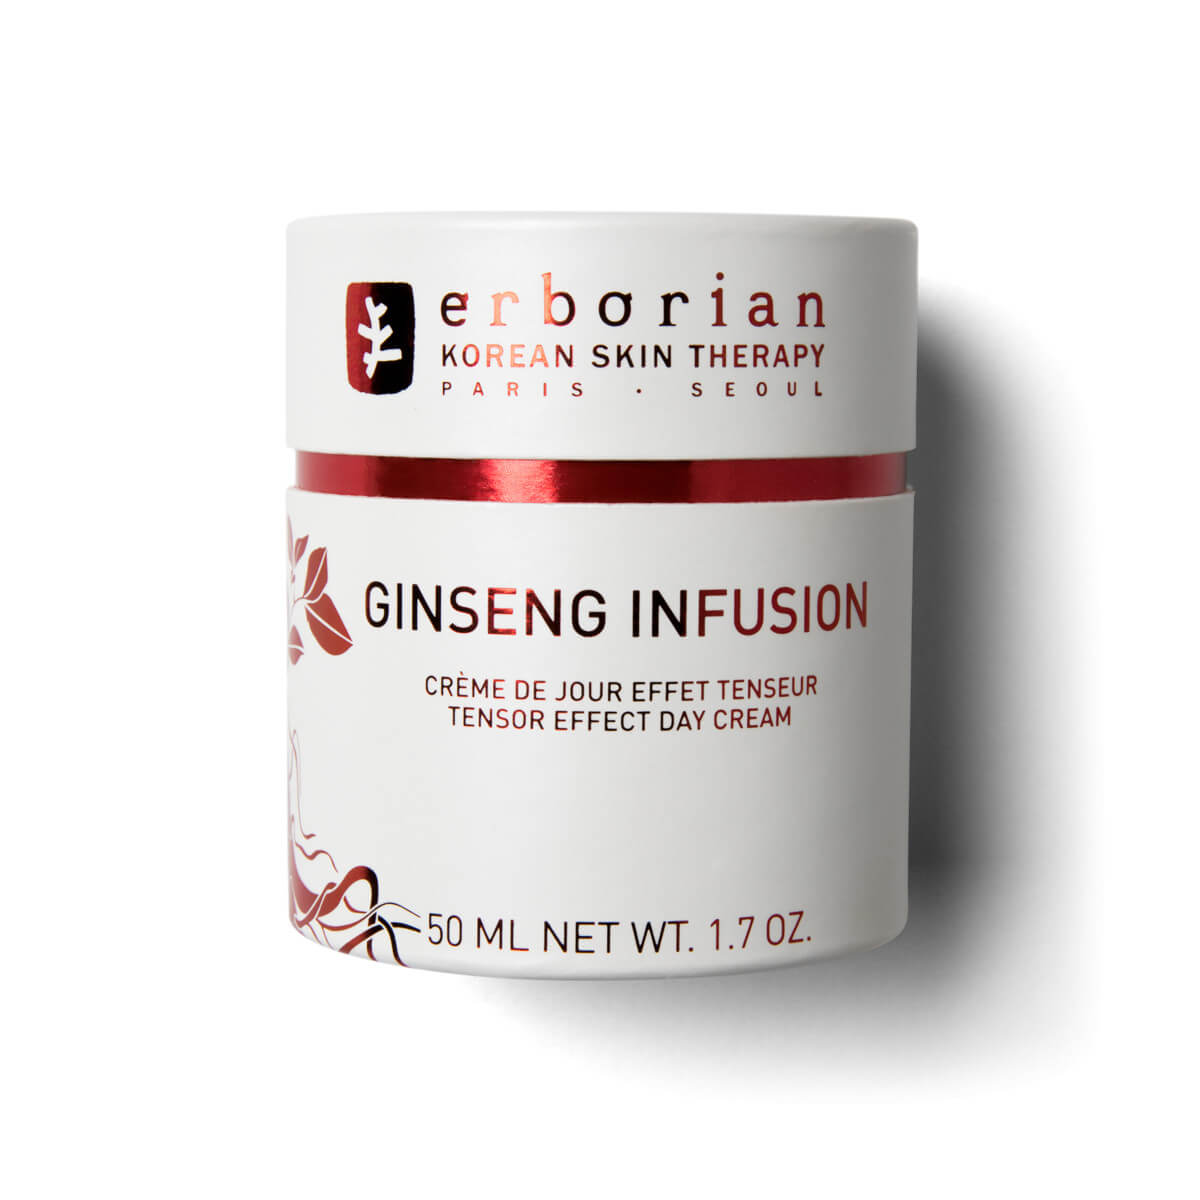 Erborian Denný krém pre zrelú pleť Ginseng Infusion (Tensor Effect Day Cream) 50 ml + 2 mesiace na vrátenie tovaru